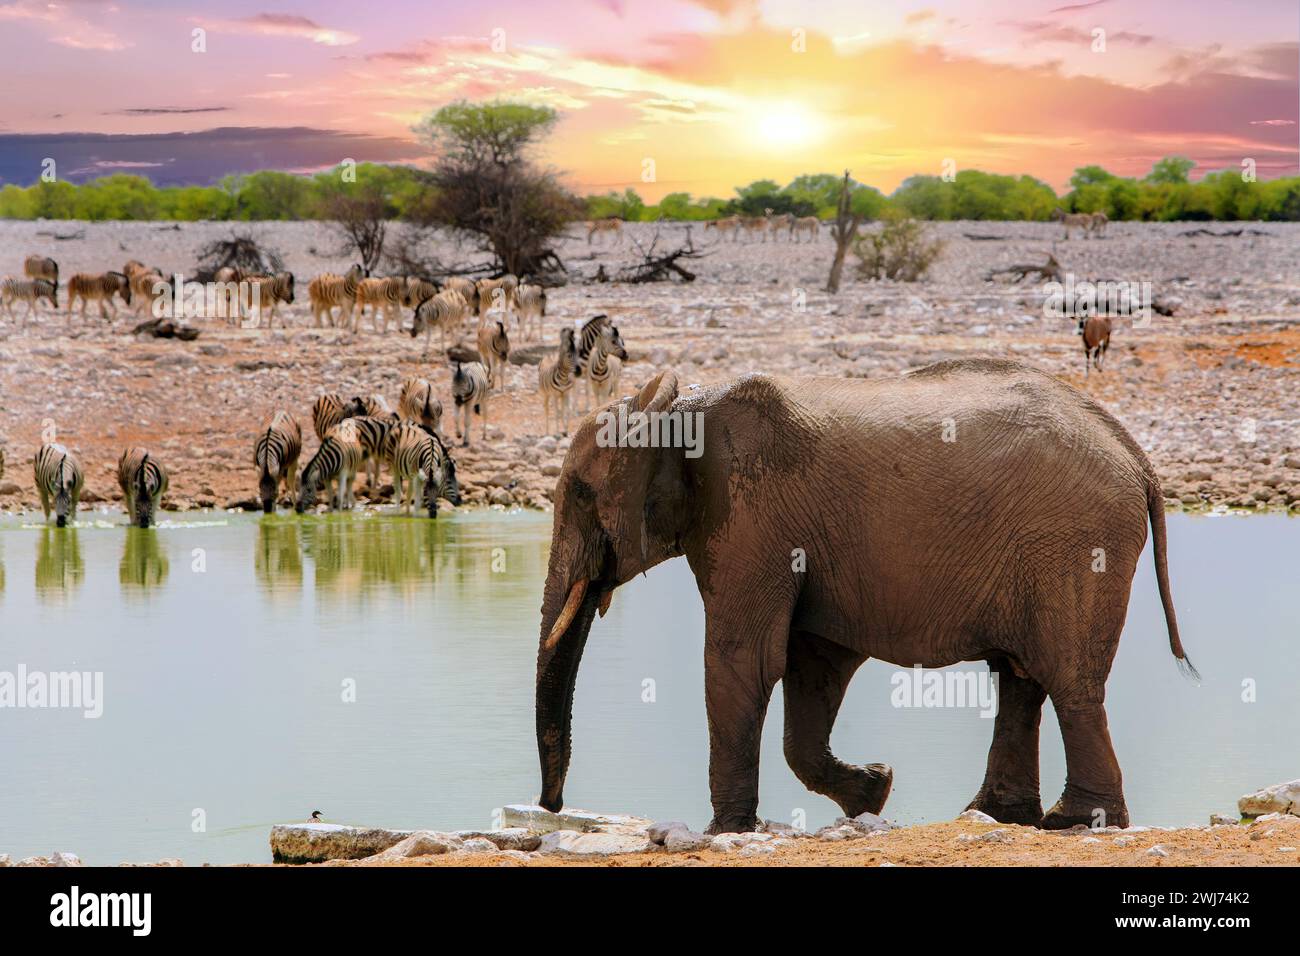 Afrikanischer Elefant, der neben einem Wasserloch spaziert, während eine große Herde von Plains Zebras auf der gegenüberliegenden Seite trinkt, mit einem schönen Sonnenuntergangshimmel Stockfoto